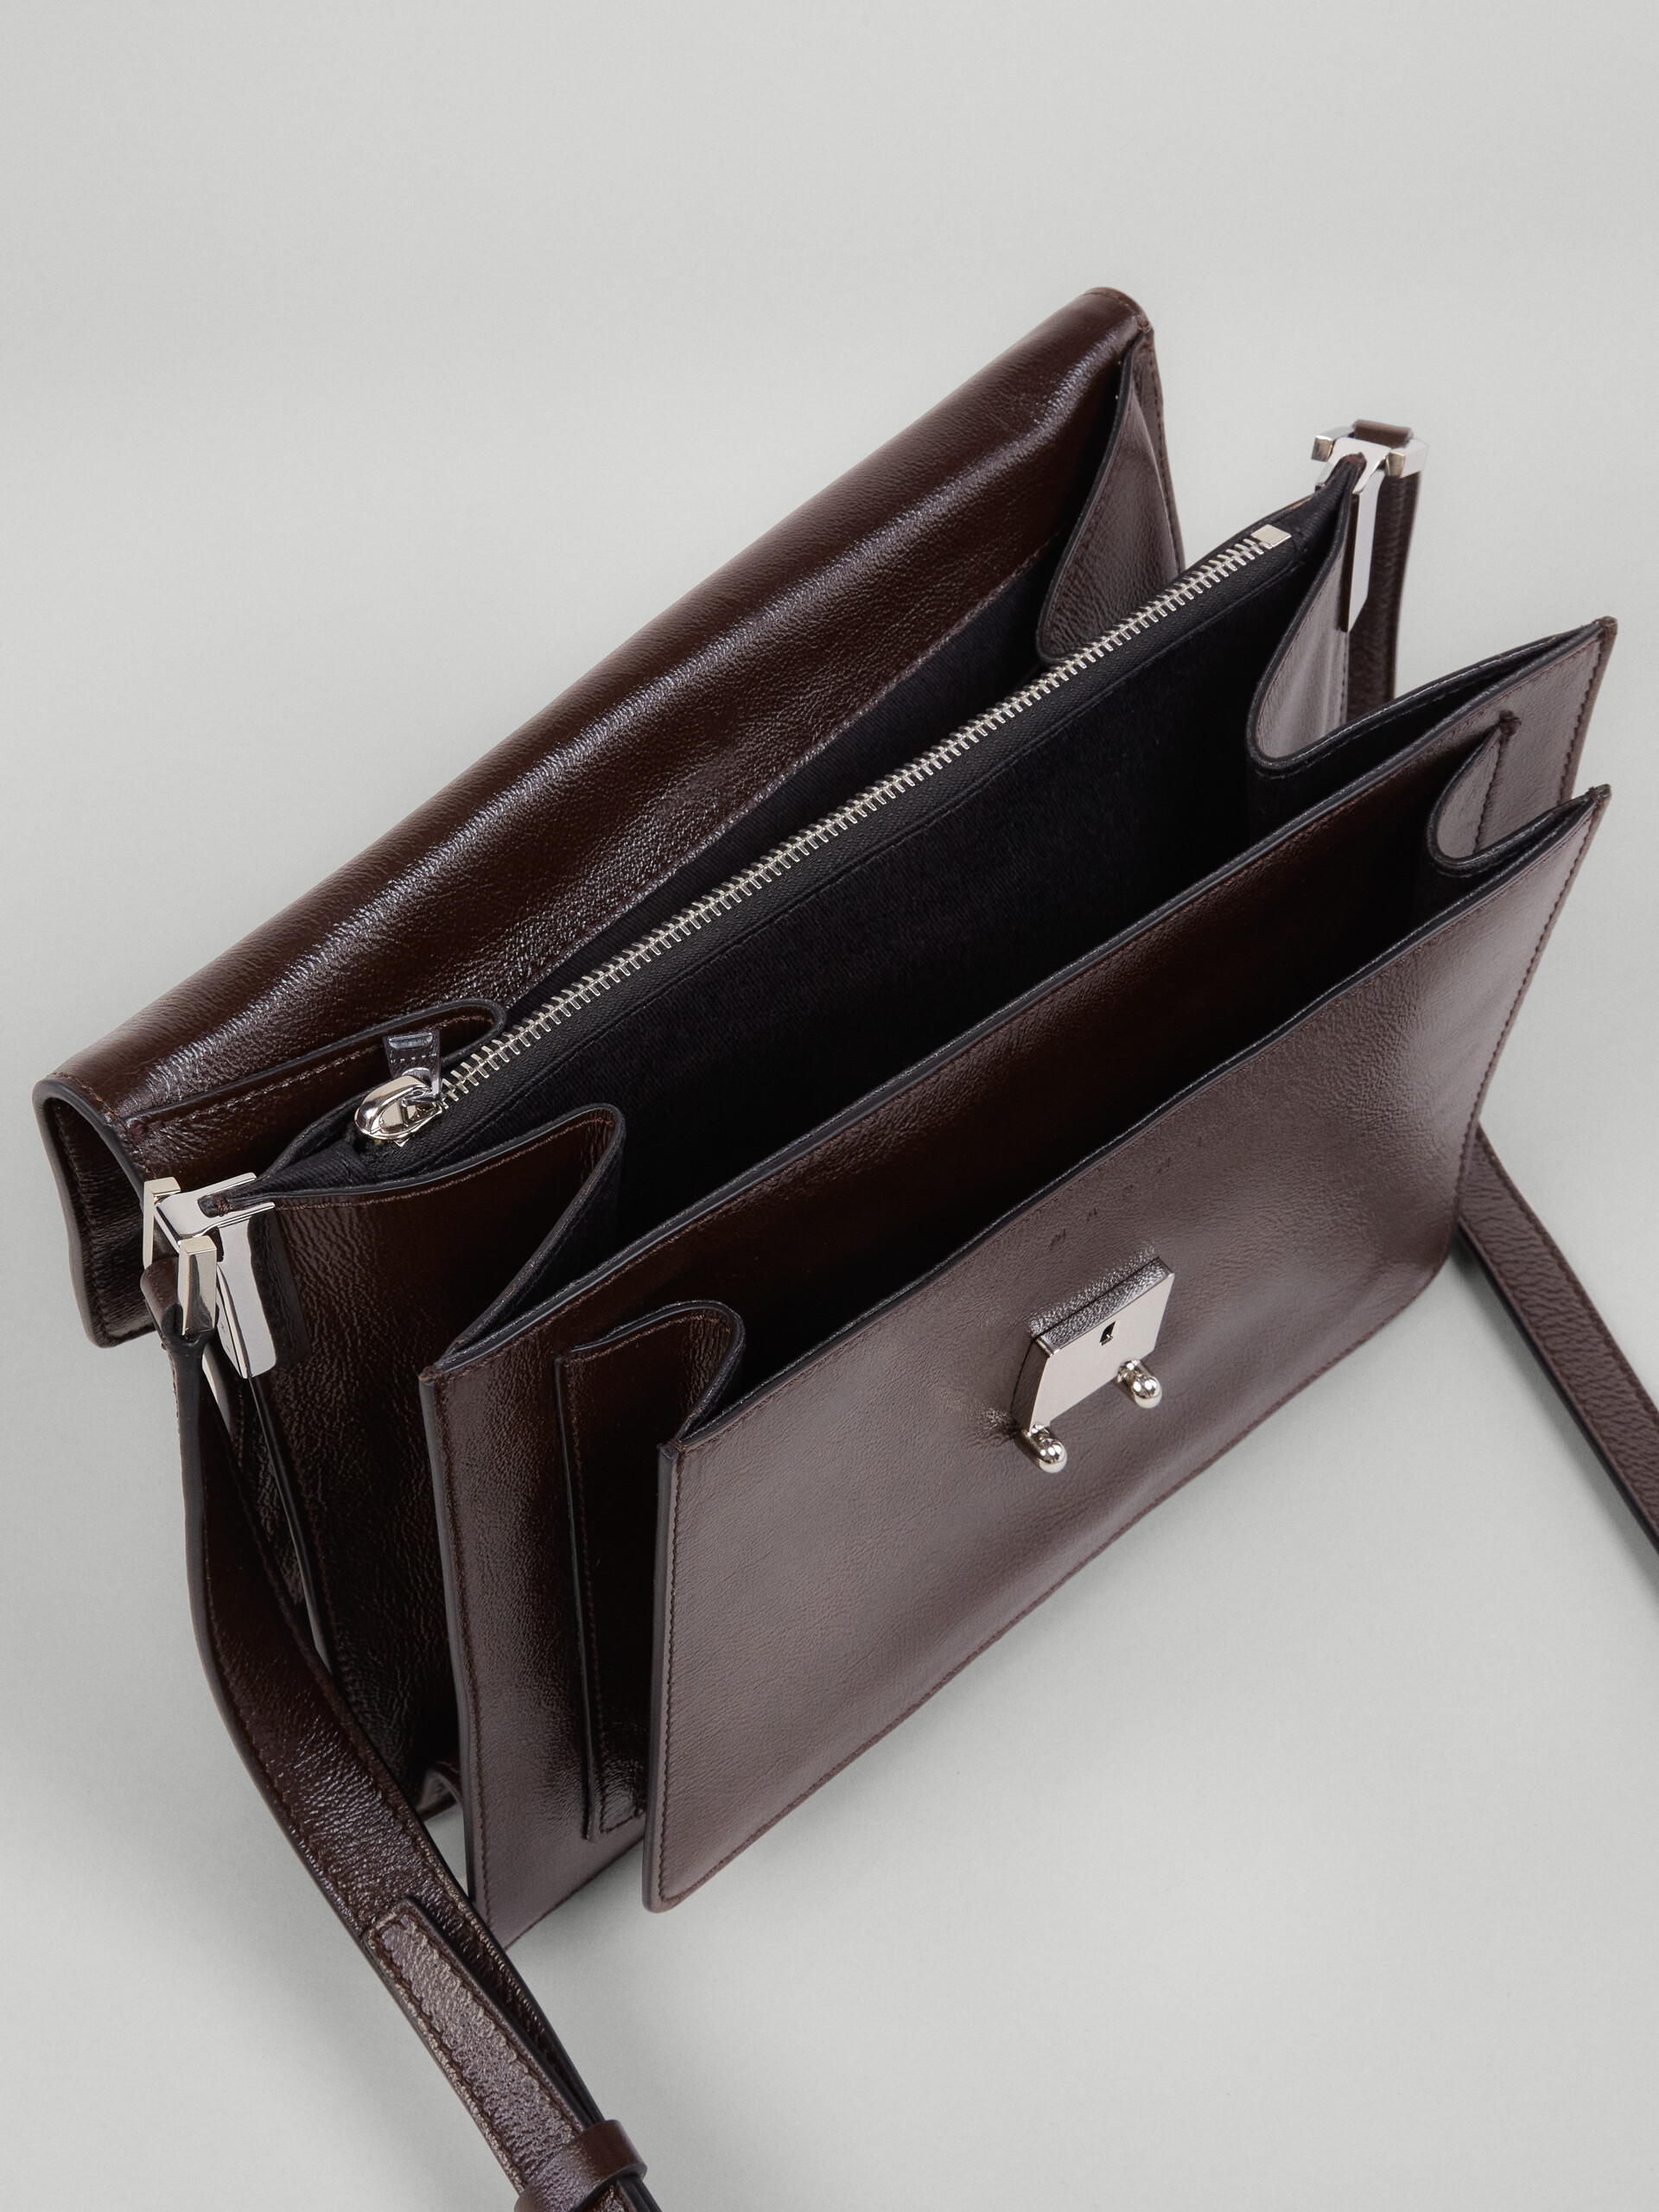 TRUNK SOFT large bag in brown leather - Shoulder Bag - Image 4